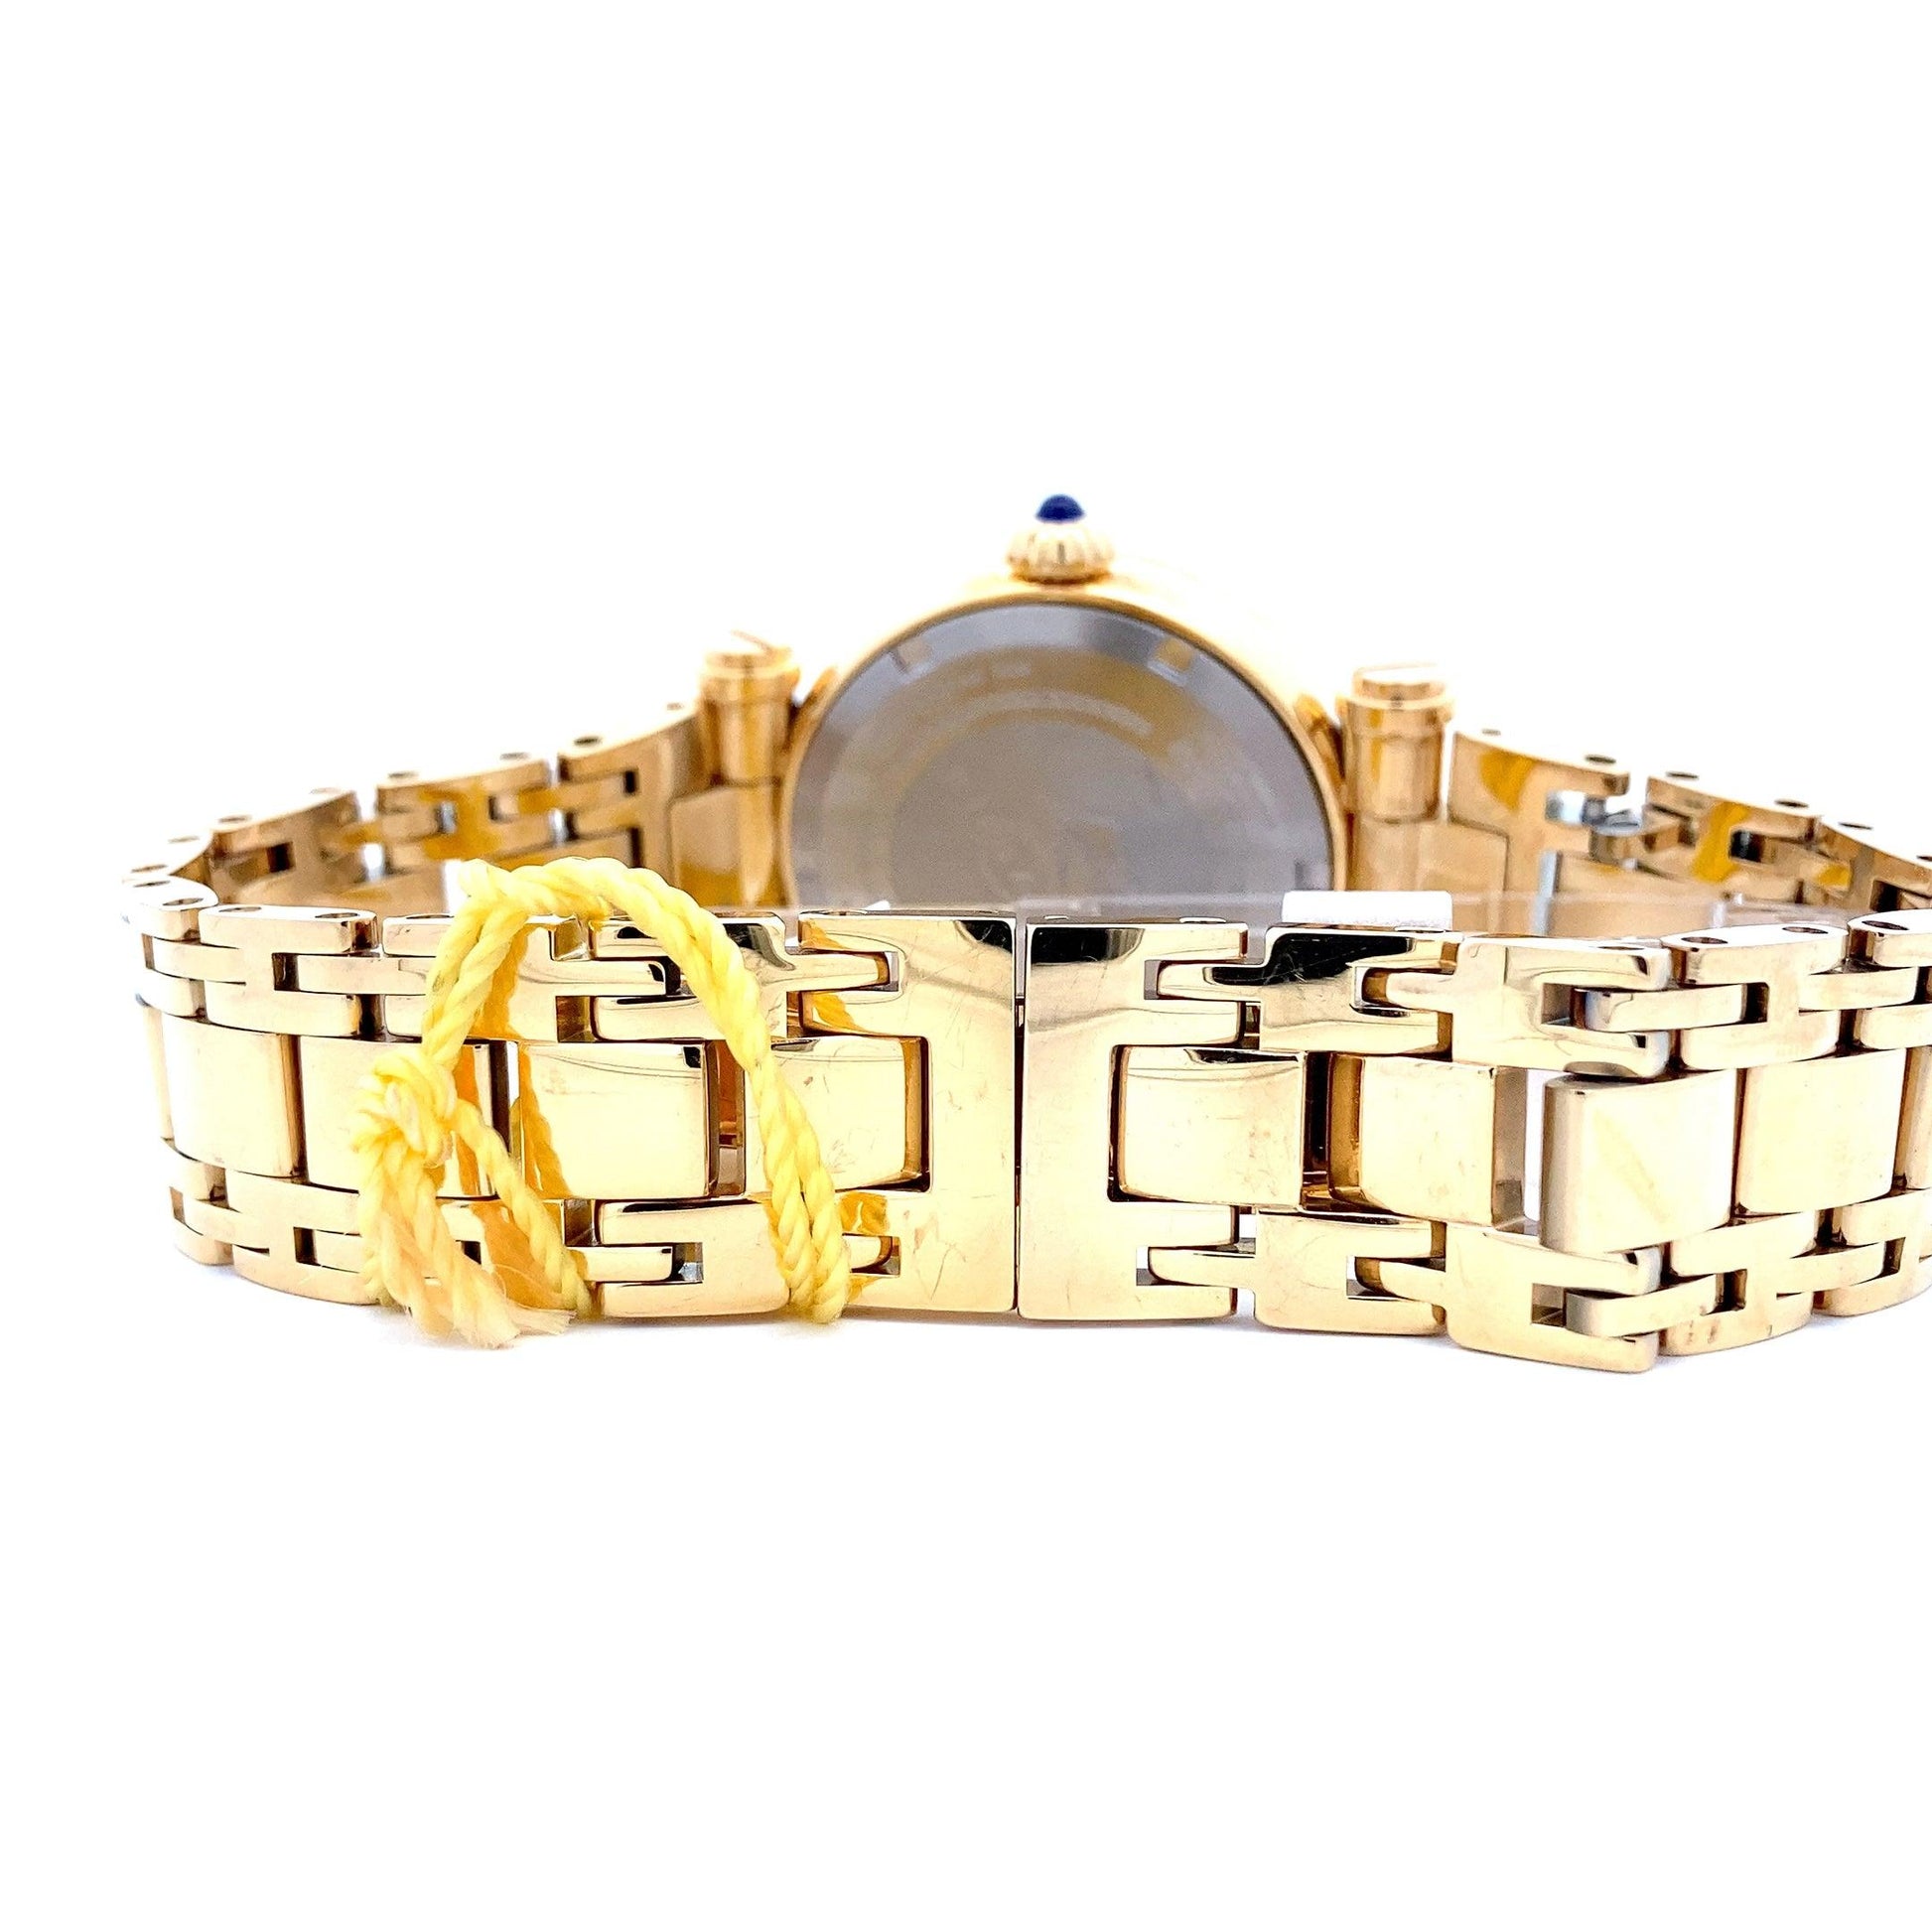 Invicta Subaqua Gold-Tone Acero Inoxidable Reloj de Mujer 24428 - ipawnishop.com